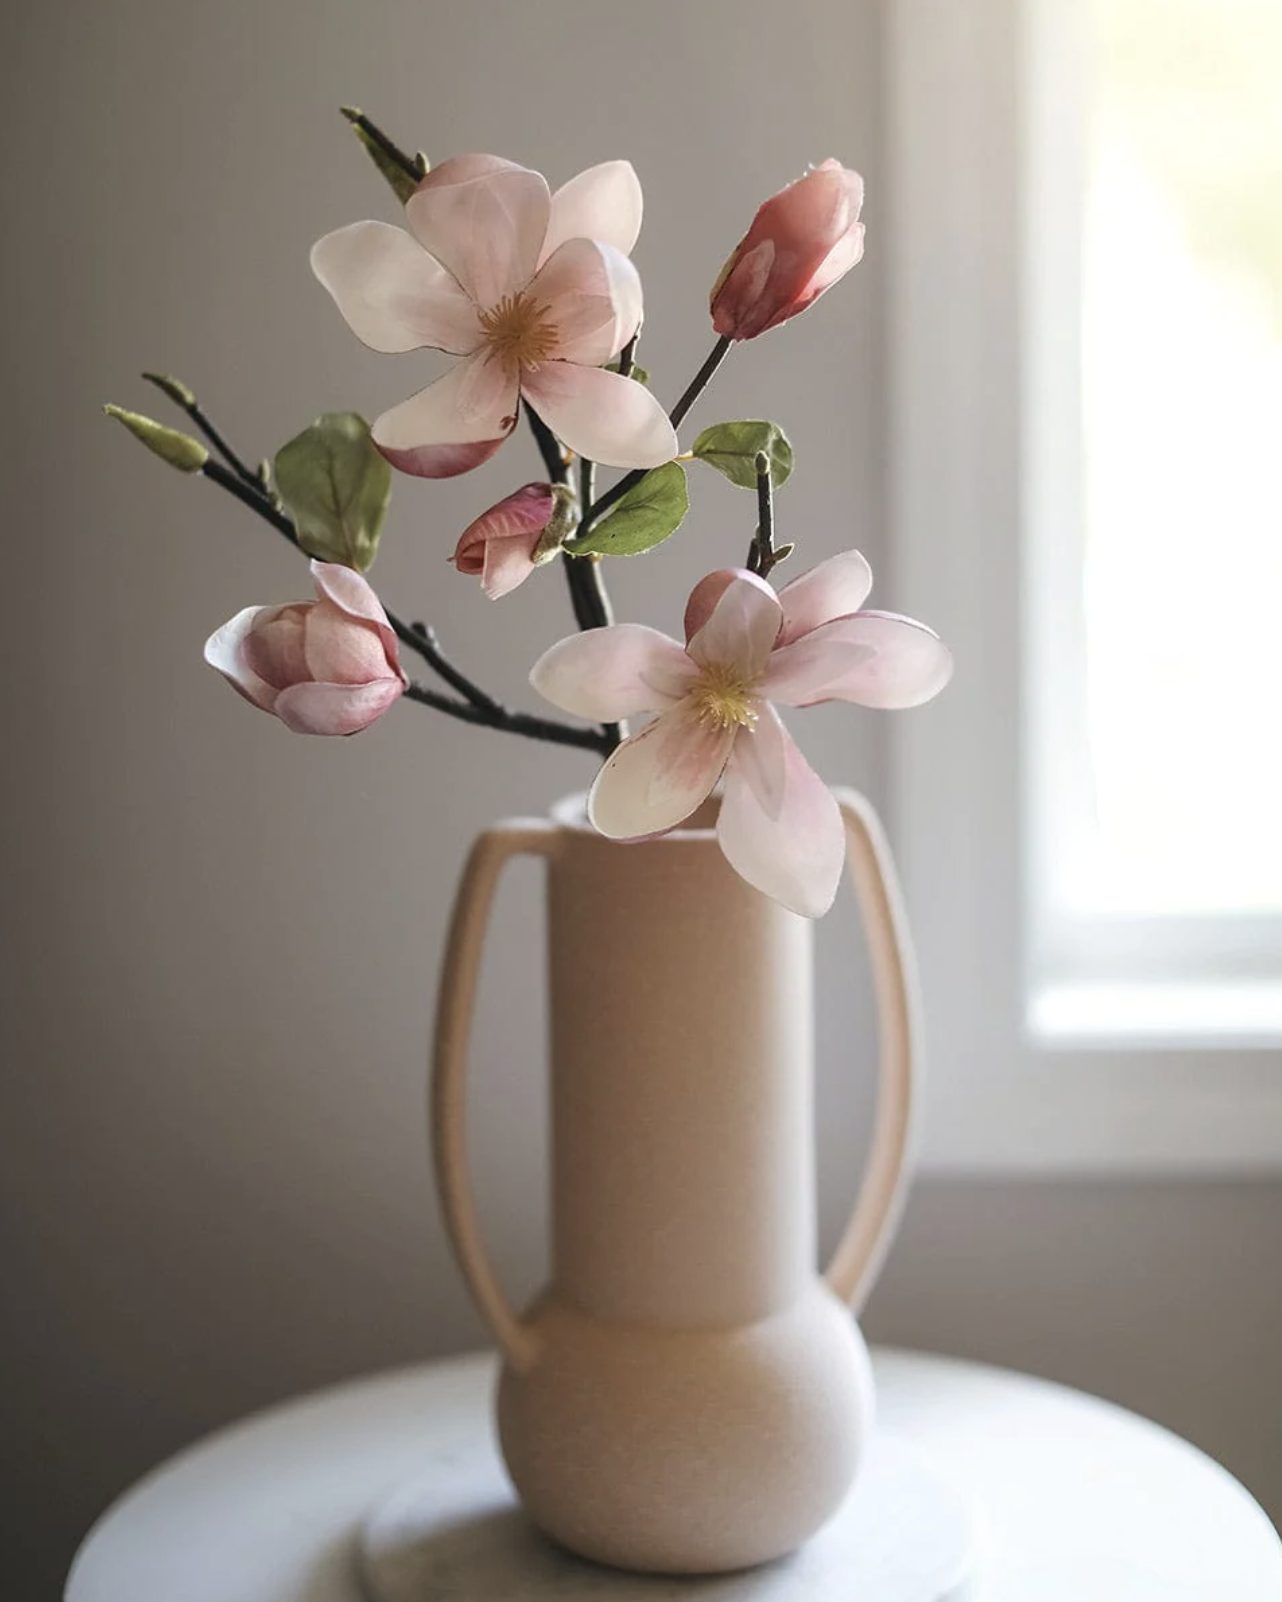 Faux Magnolias Pink Magnolia Blossoms in Pink Ceramic Vase